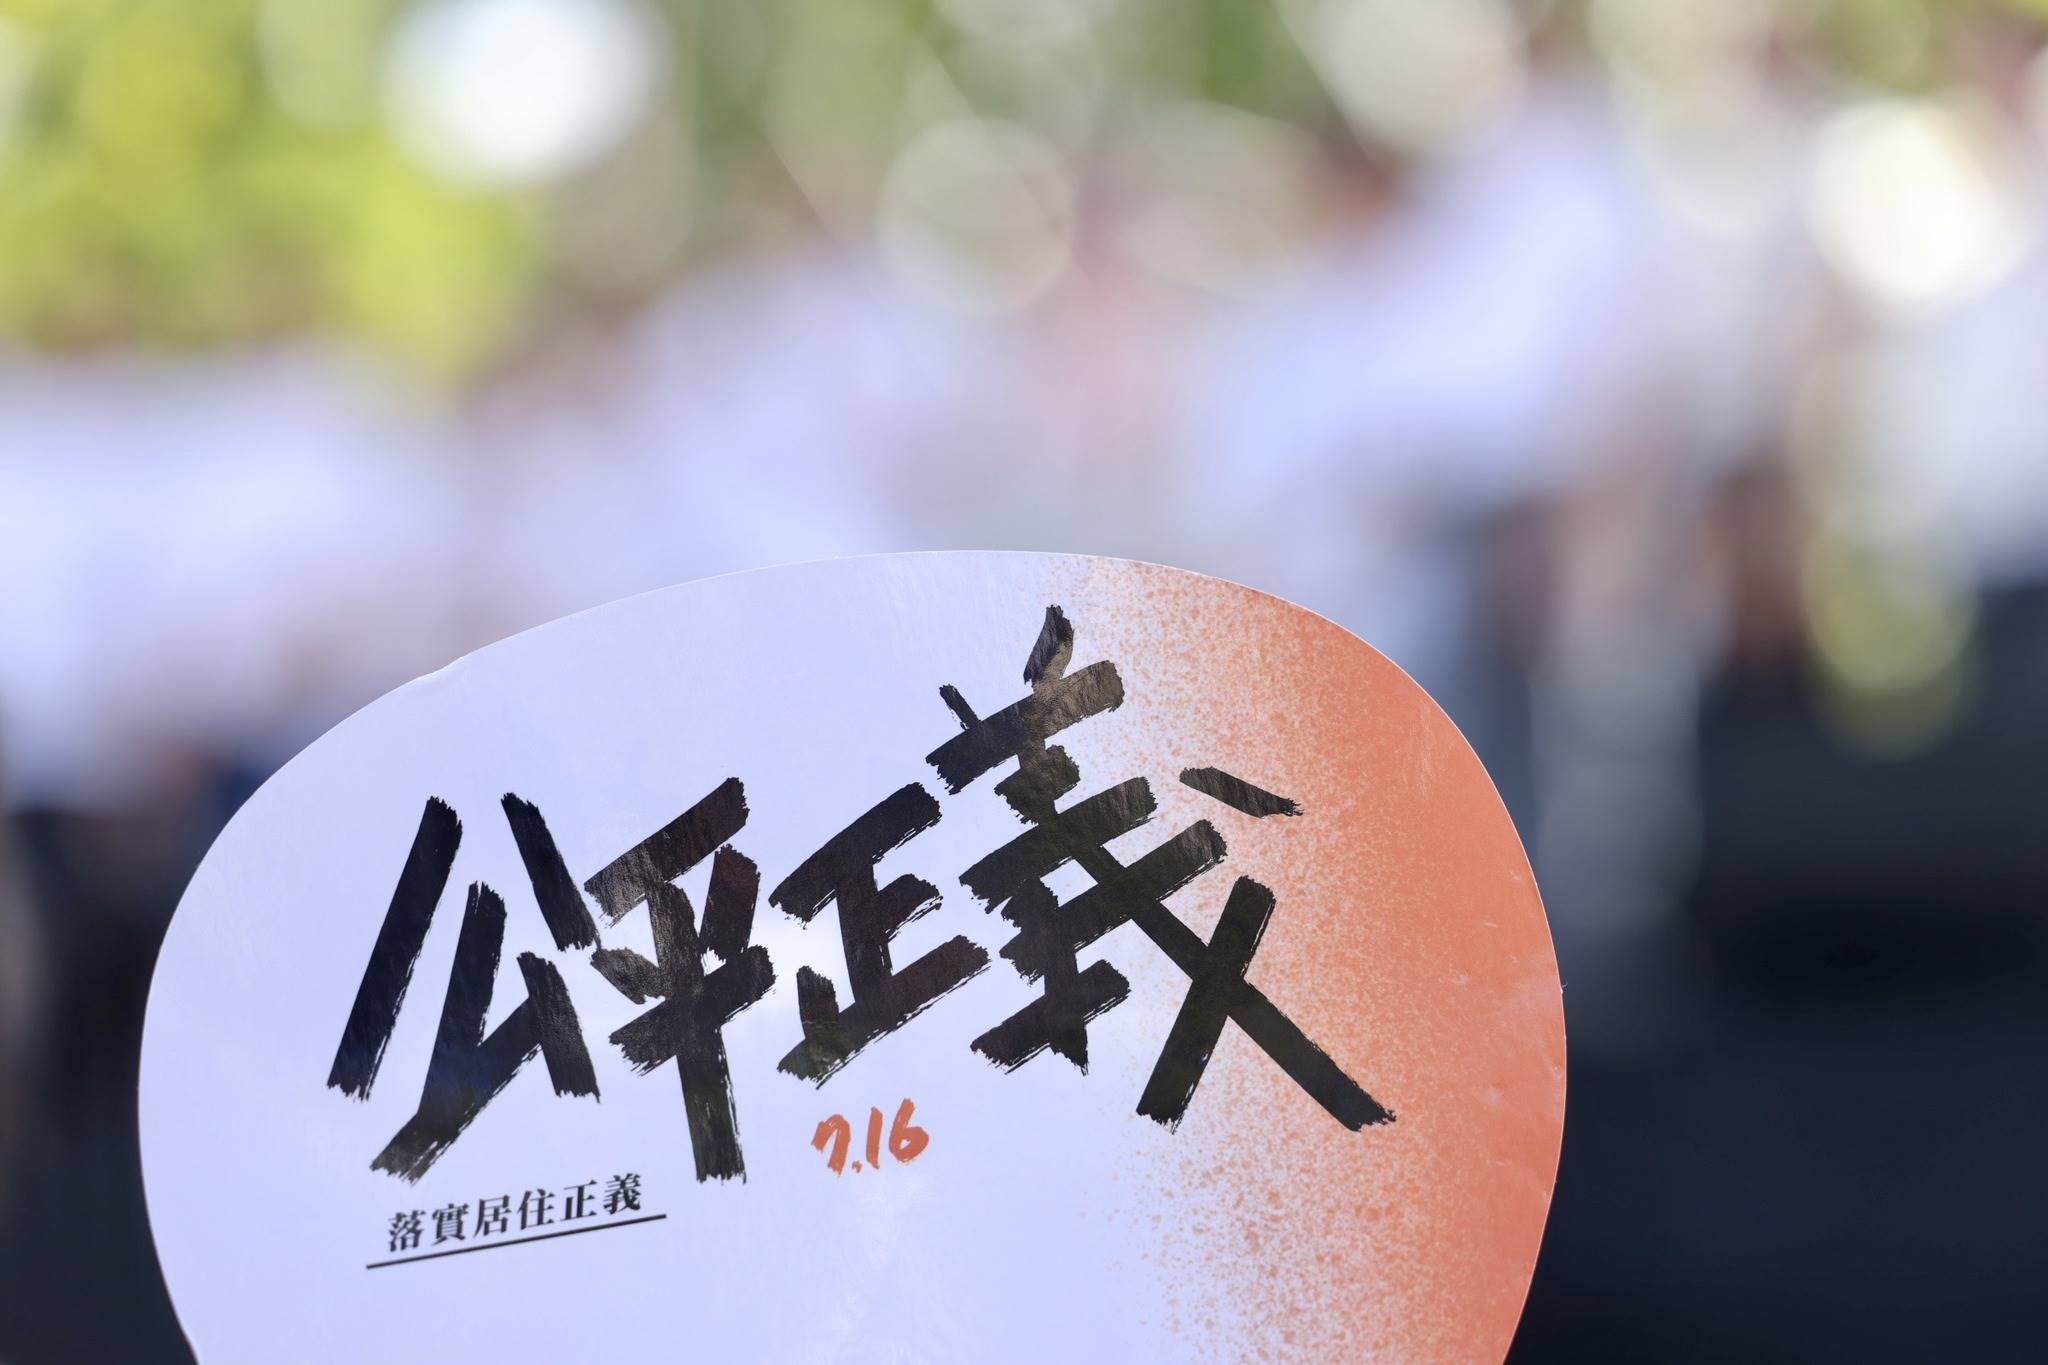 近期，居住正義成為話題，更有民眾在7月走上凱道爭取居住正義，加上中國房地產頻傳壞訊，也讓民眾對於台灣房市的未來感到擔憂。而各個總統候選人也積極表態，承諾會守住台灣房市。